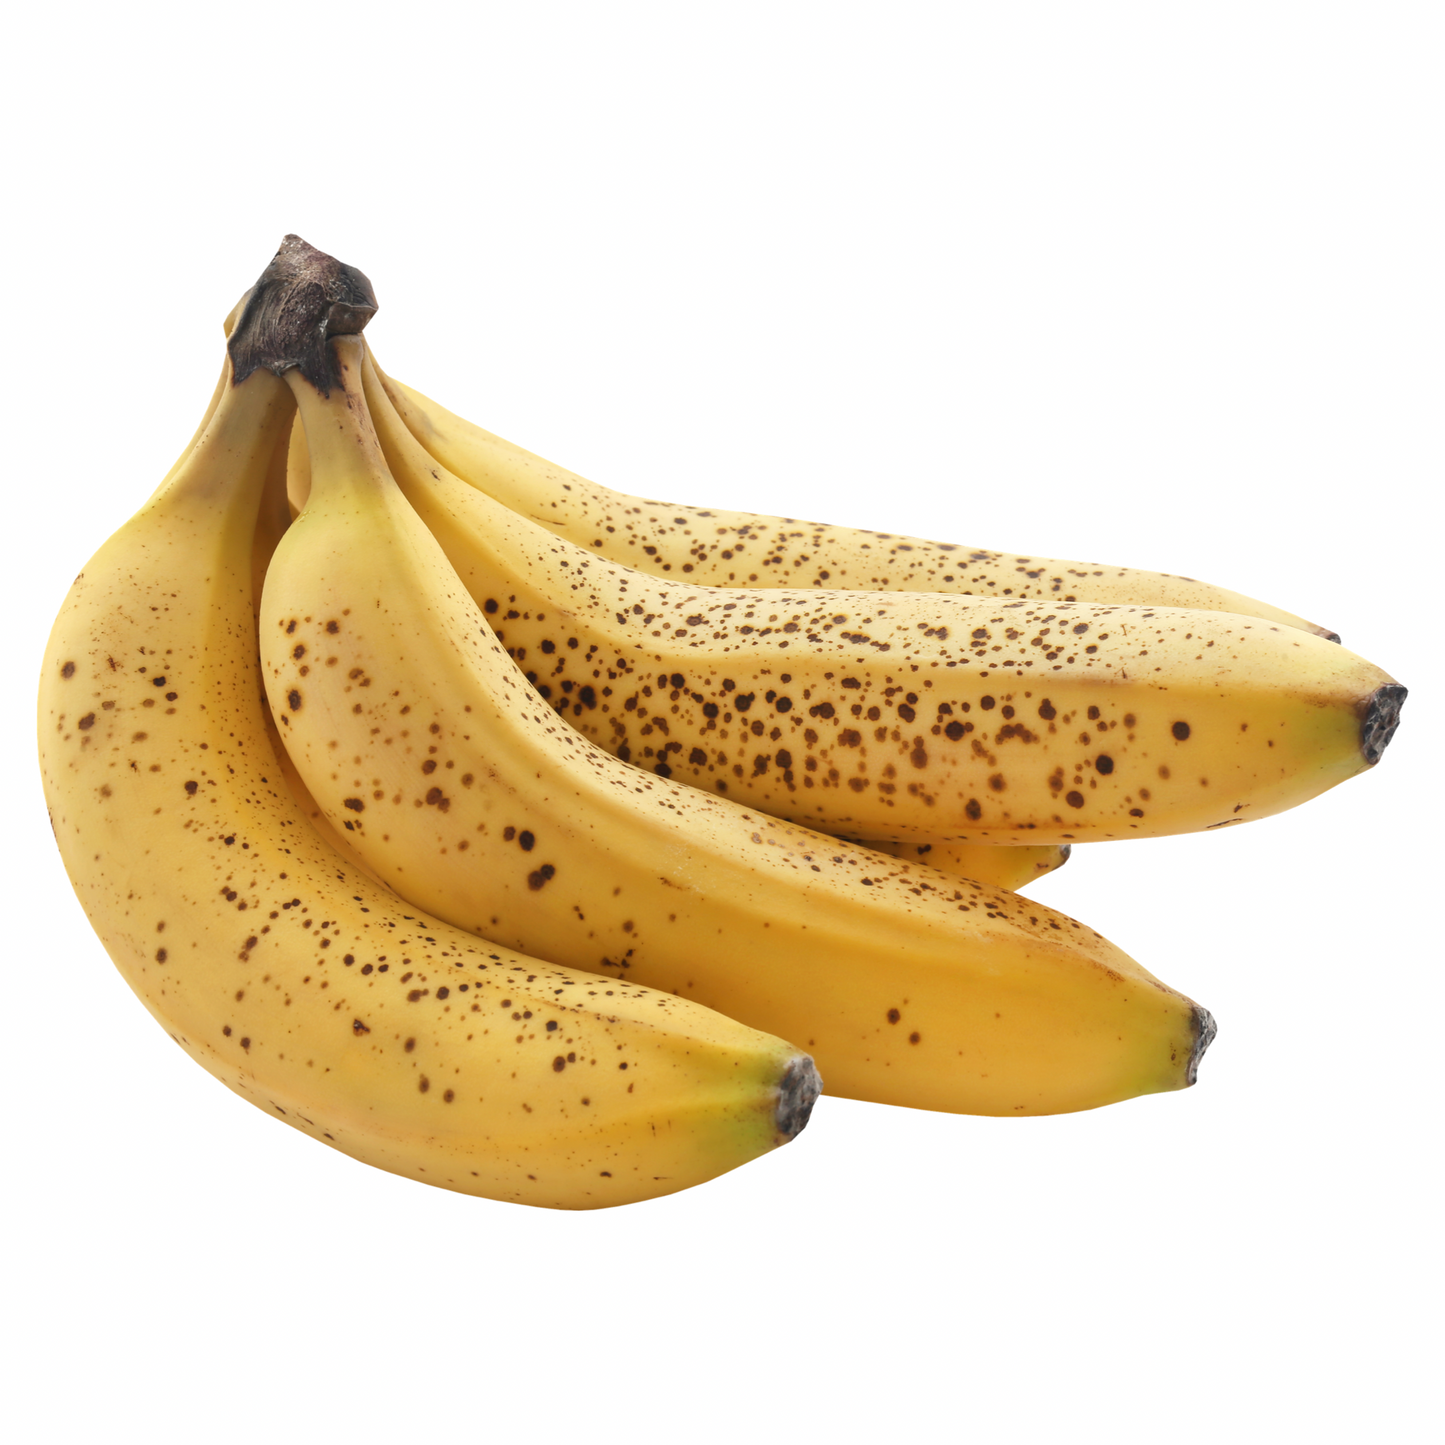 Banano orgánico x unidad